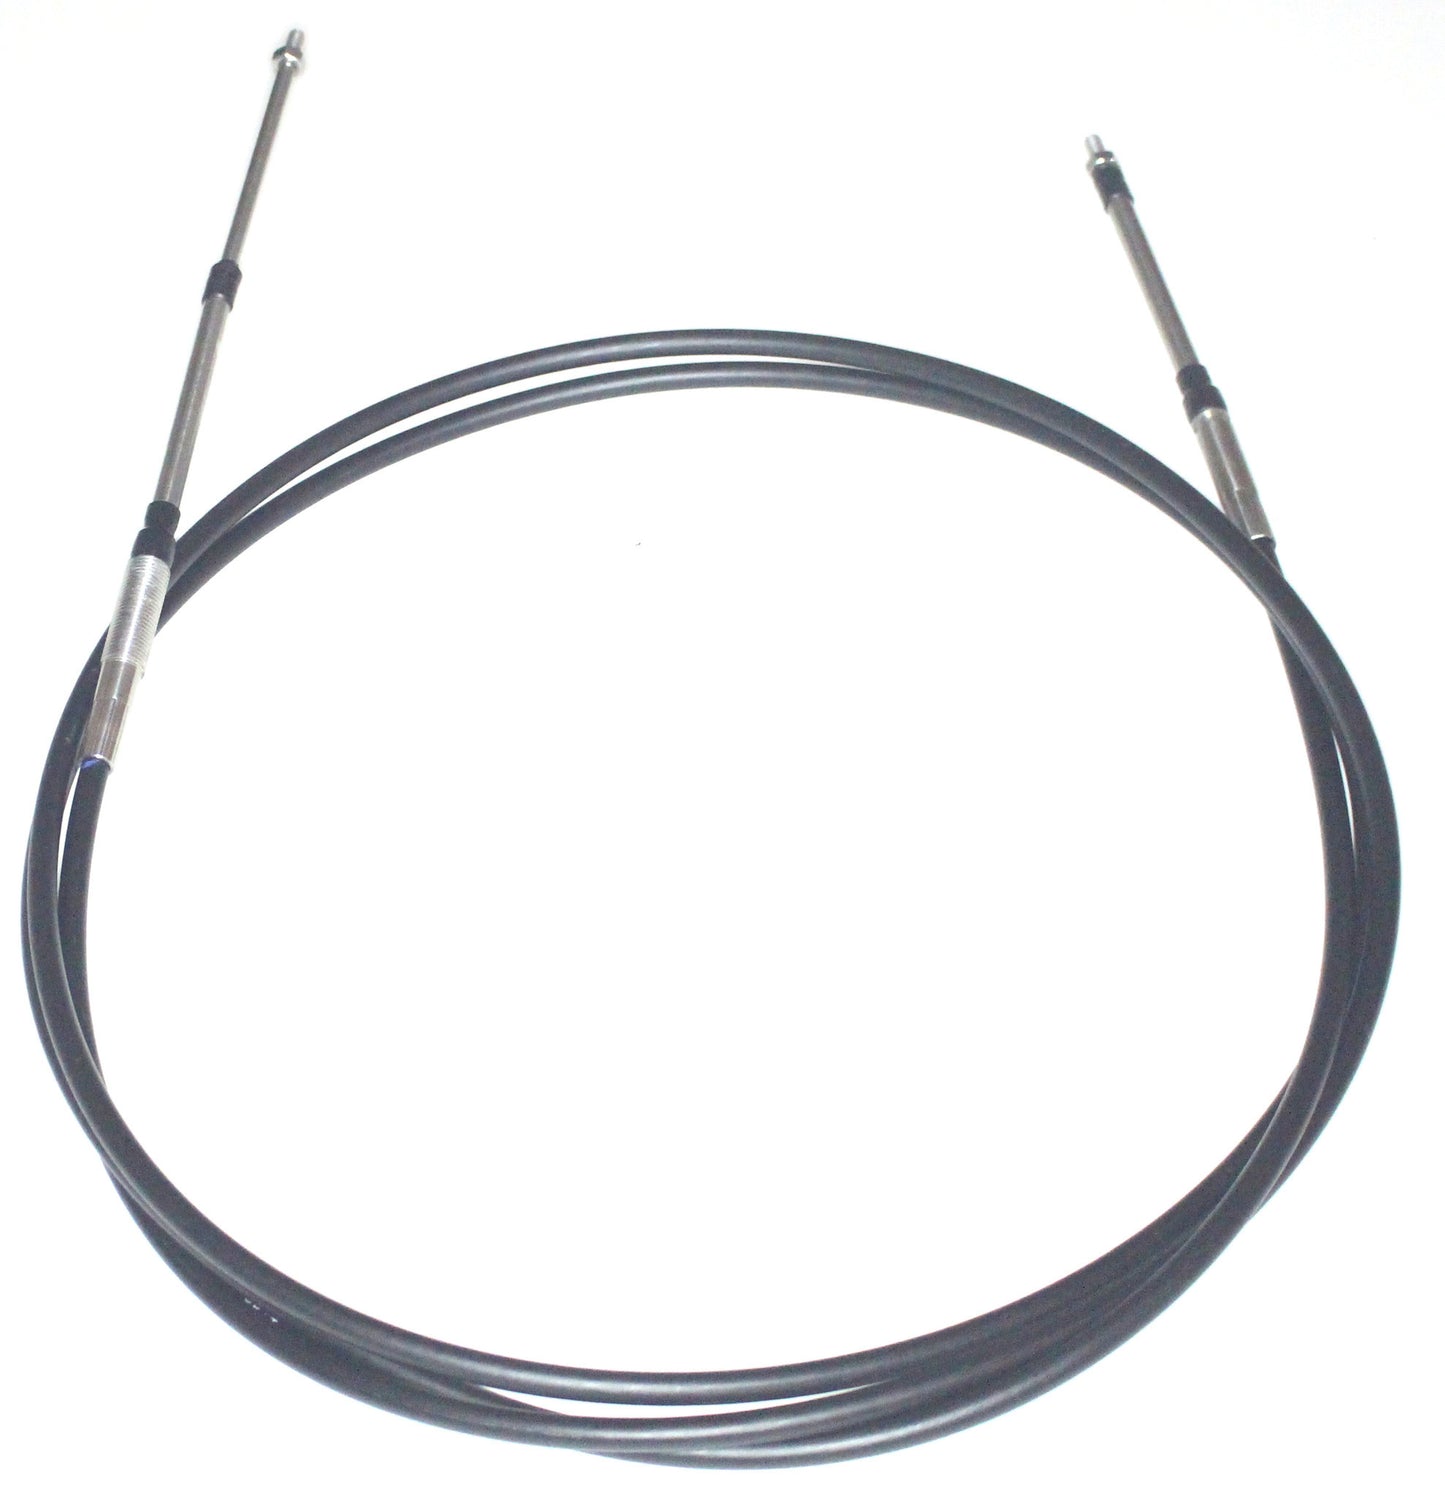 SEADOO Steering Cable 3D 2004-2007 RFI DI OEM # 277001339 & 277001414